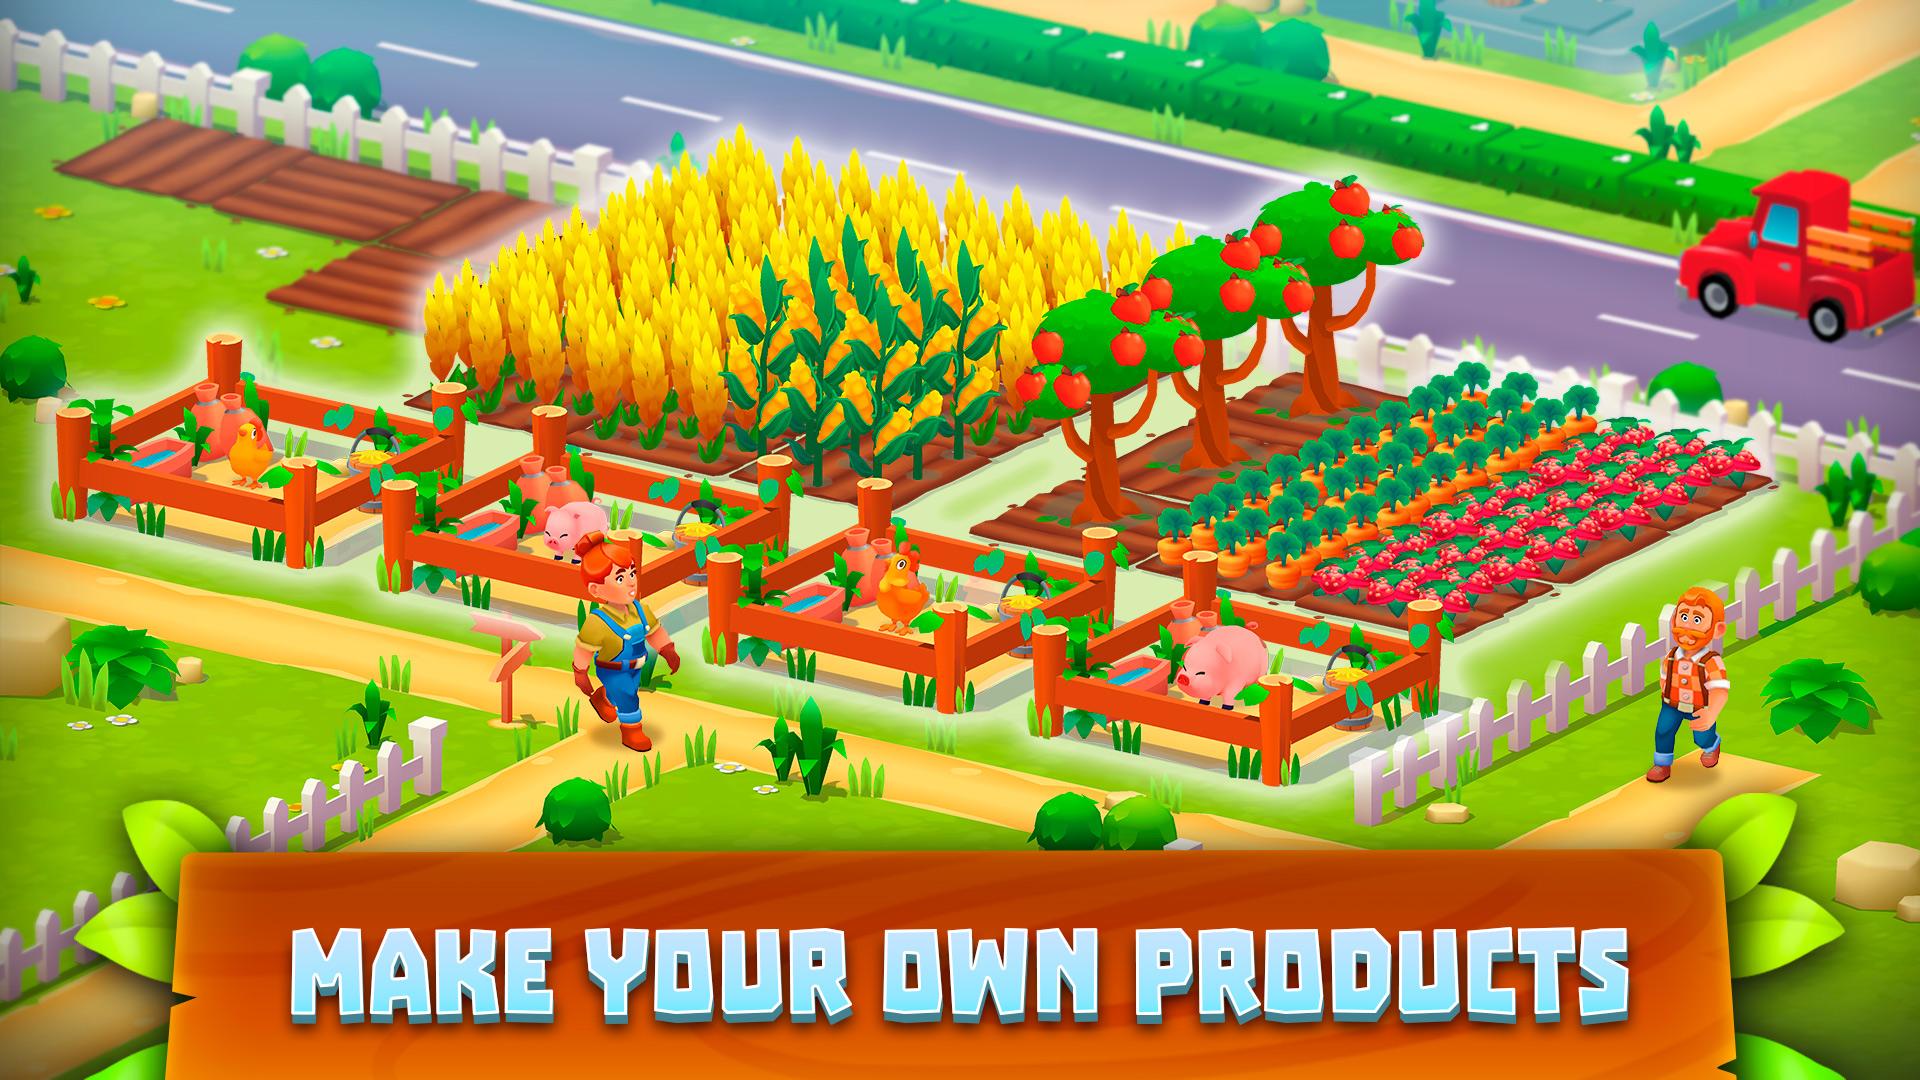 Игра Farm Town. Фарм Виладж. Farm Village 4 игра. Игра Village Farm 2. Supermarket simulator 0.1 2.2